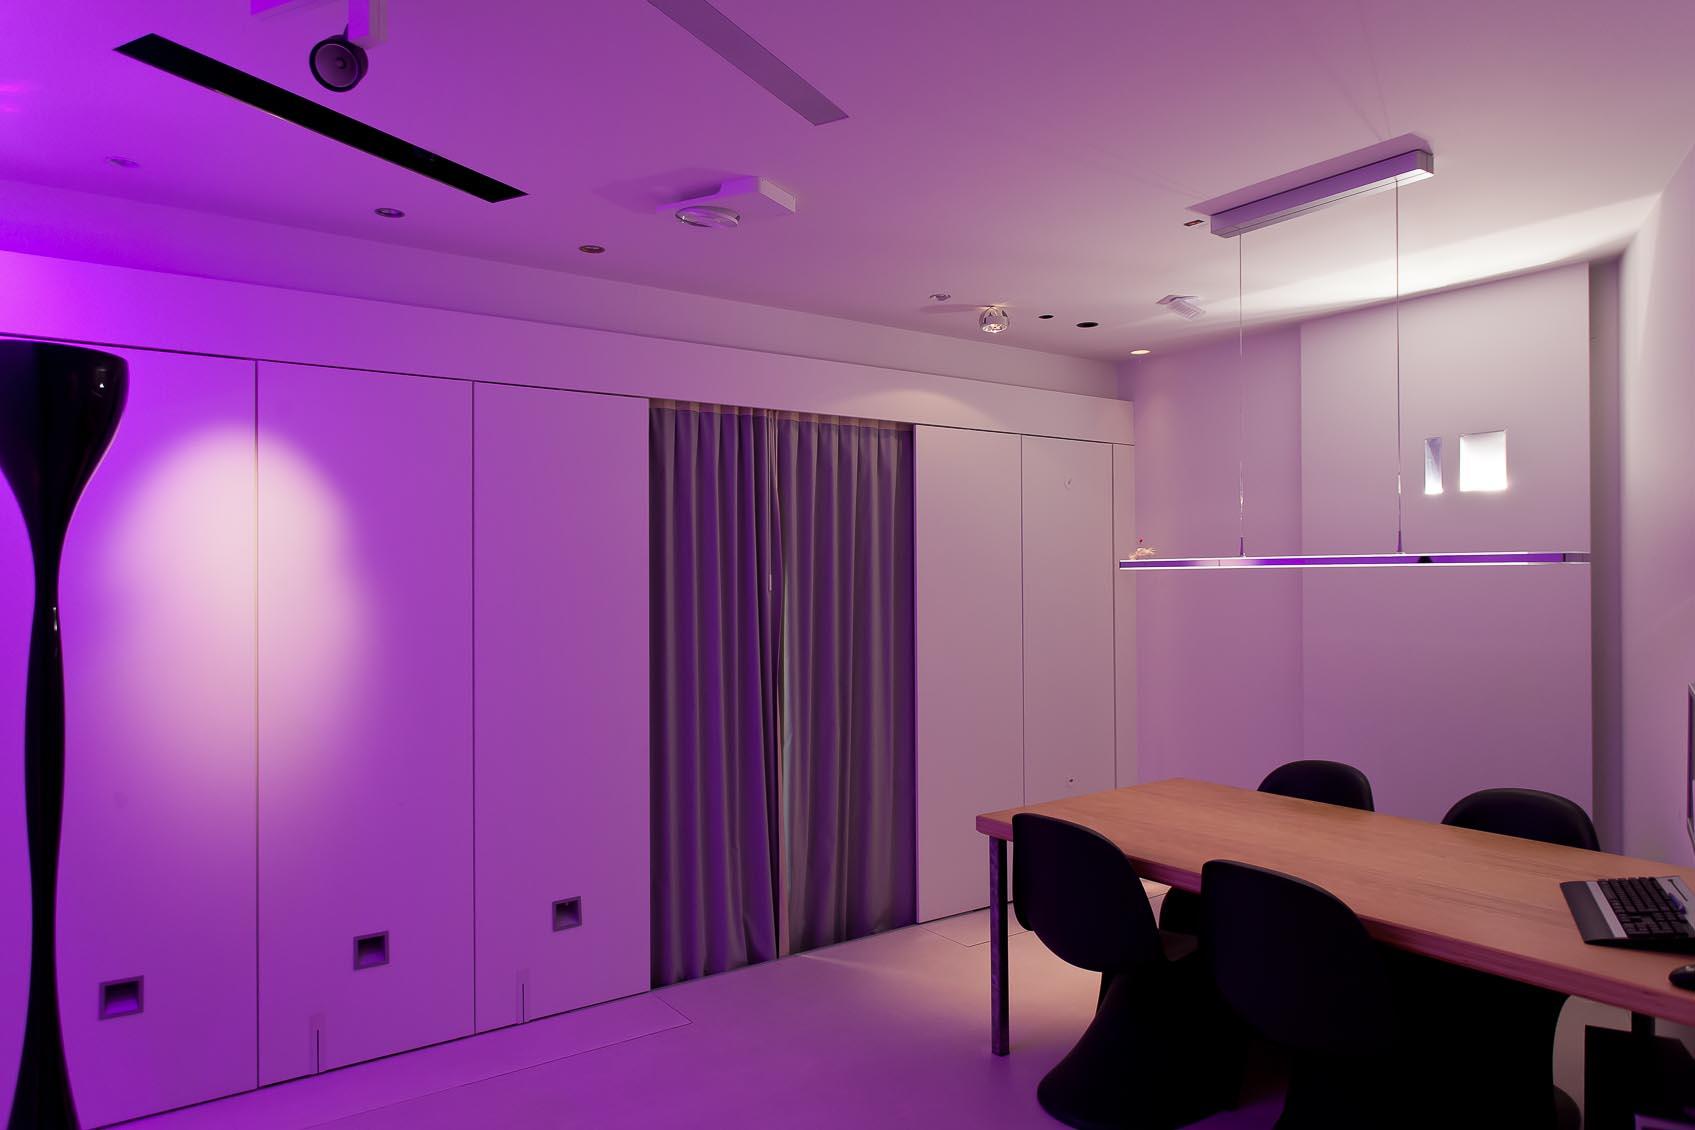 Beleef interieurverlichting in onze design lichtstudio12